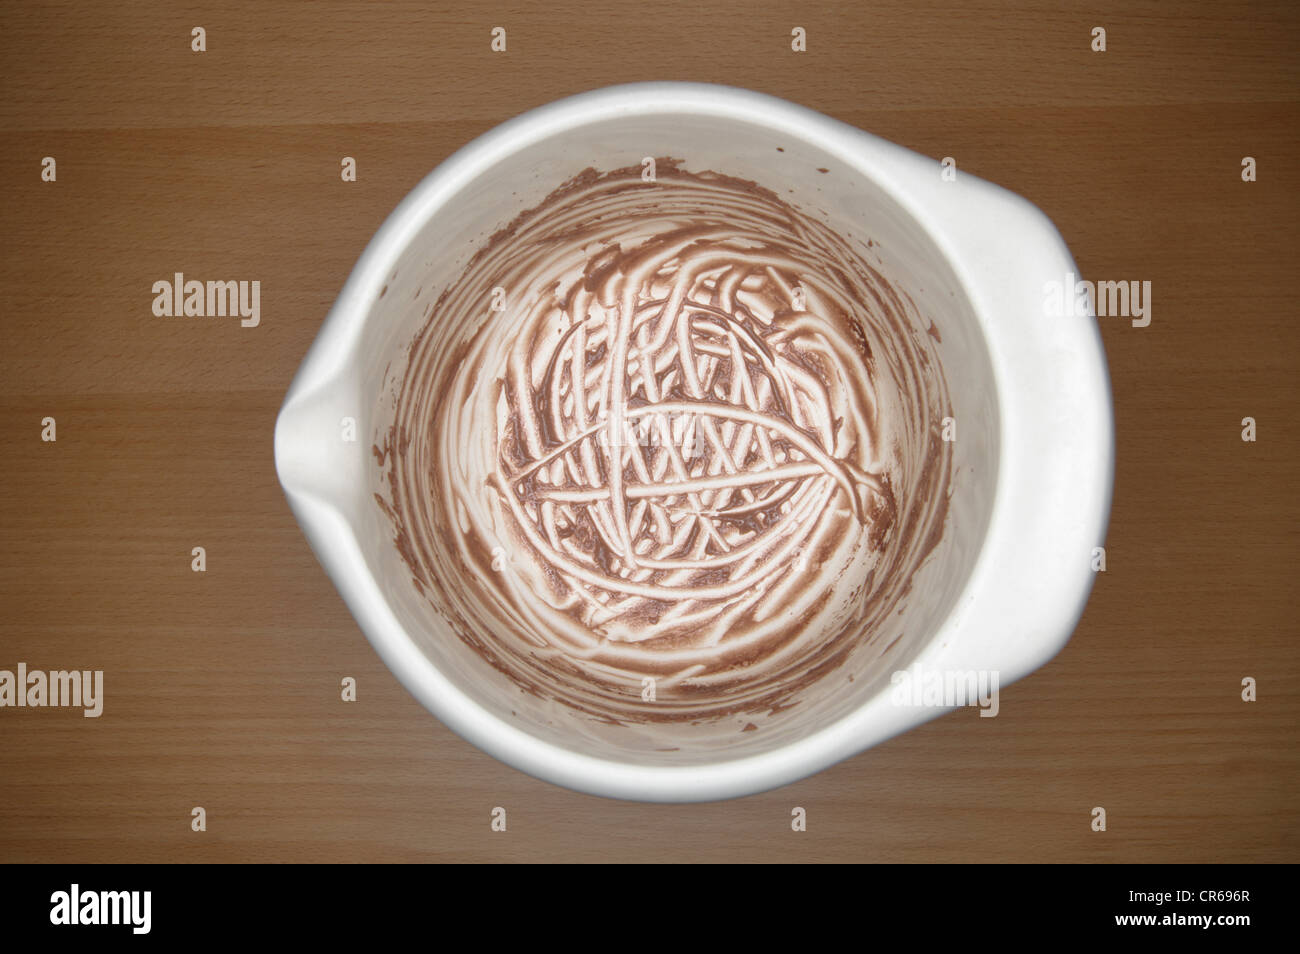 Lambito dalla parabola di un budino di cioccolato su un tavolo di legno, close up Foto Stock